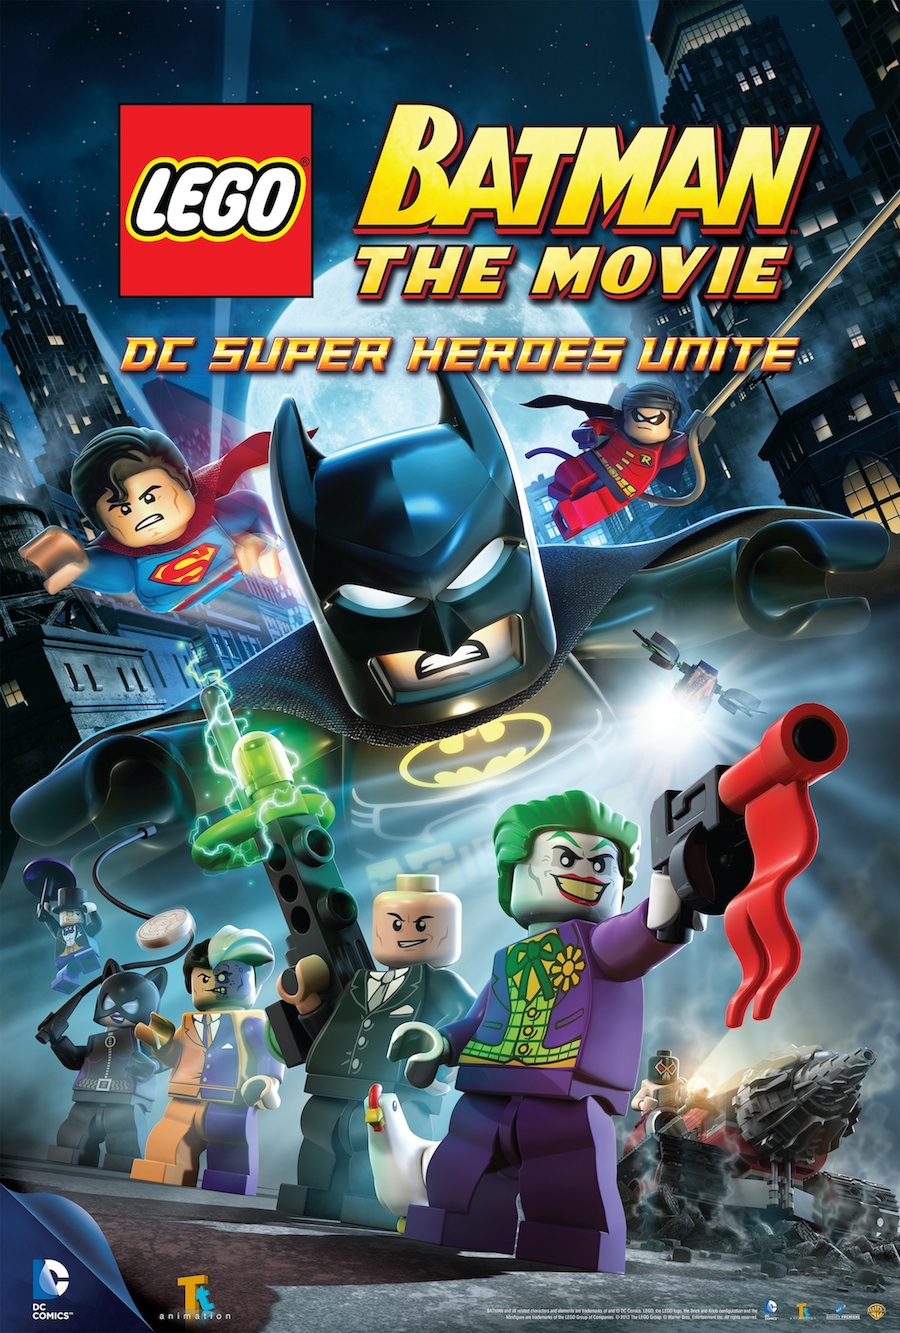 LEGO Batman cover art